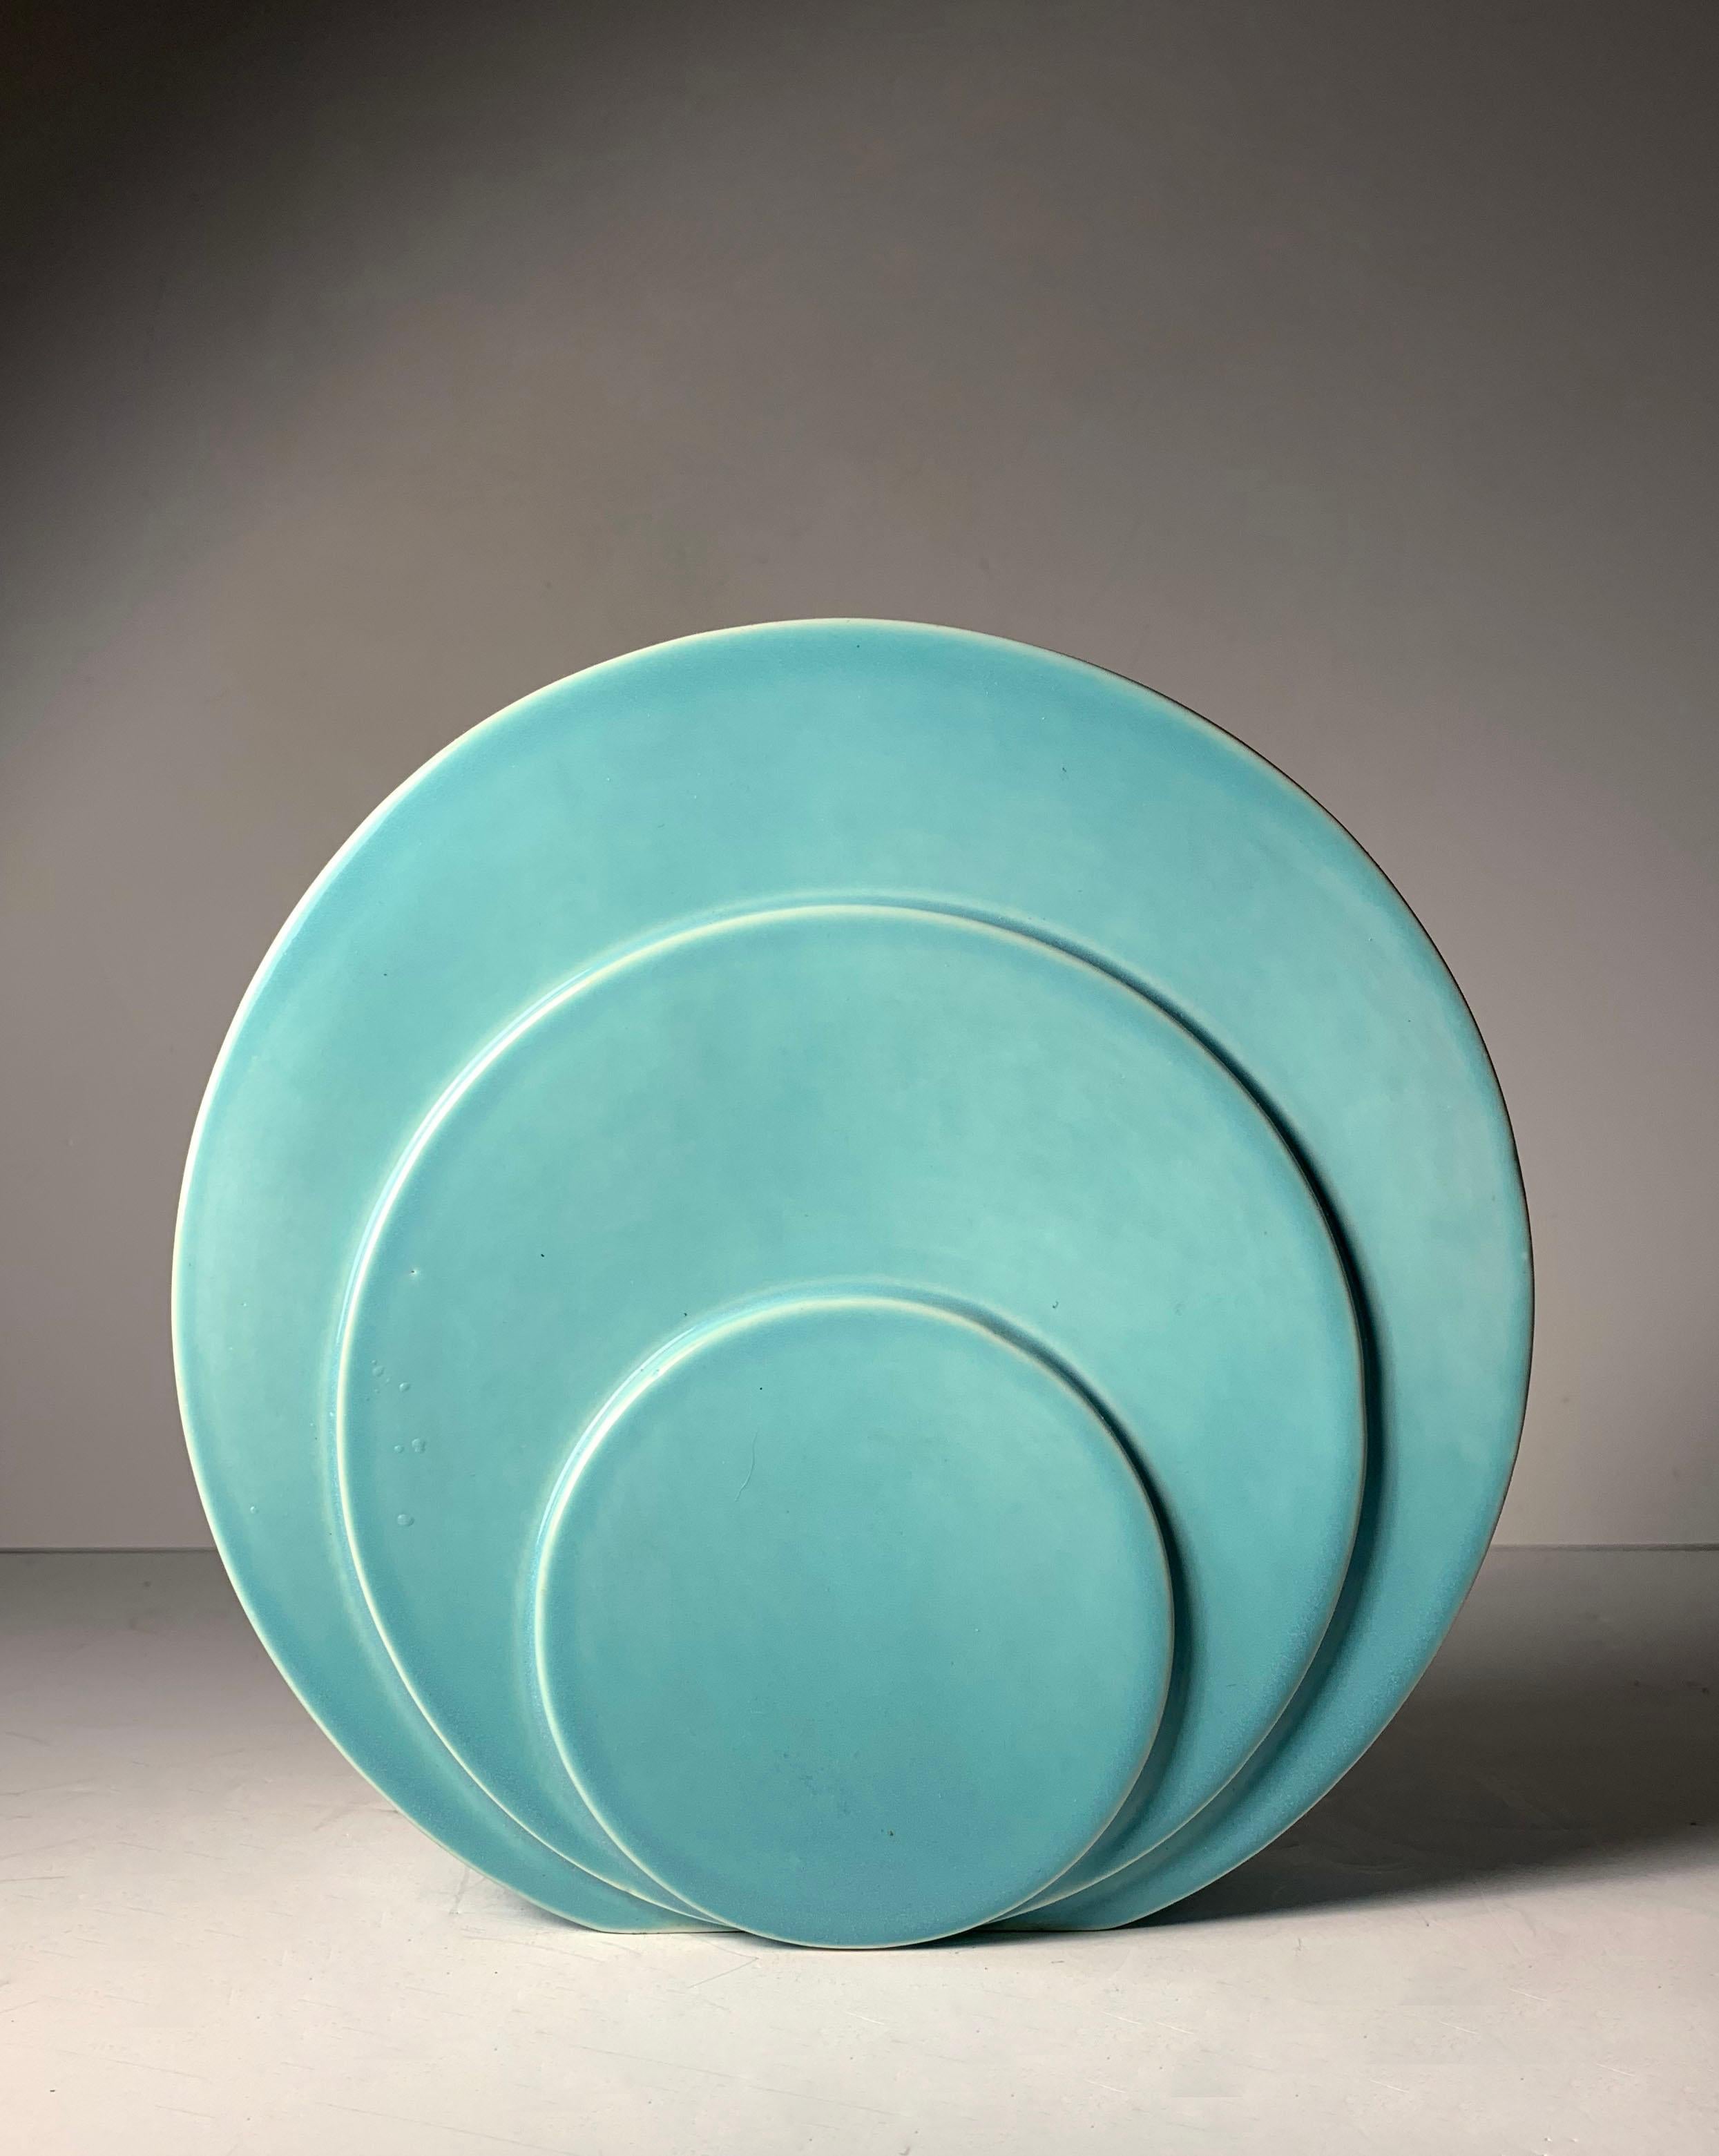 Vintage Art Deco AQUA Turquoise Circlet/Disc/Streamline Moderne vase conçu par G. McStay Jackson pour Trenton Potteries Co, division Trent Art China (TAC), ca. 1935-1942. Estampillé à l'encre bleue sur le fond : The Trenton Potteries Co., Trenton